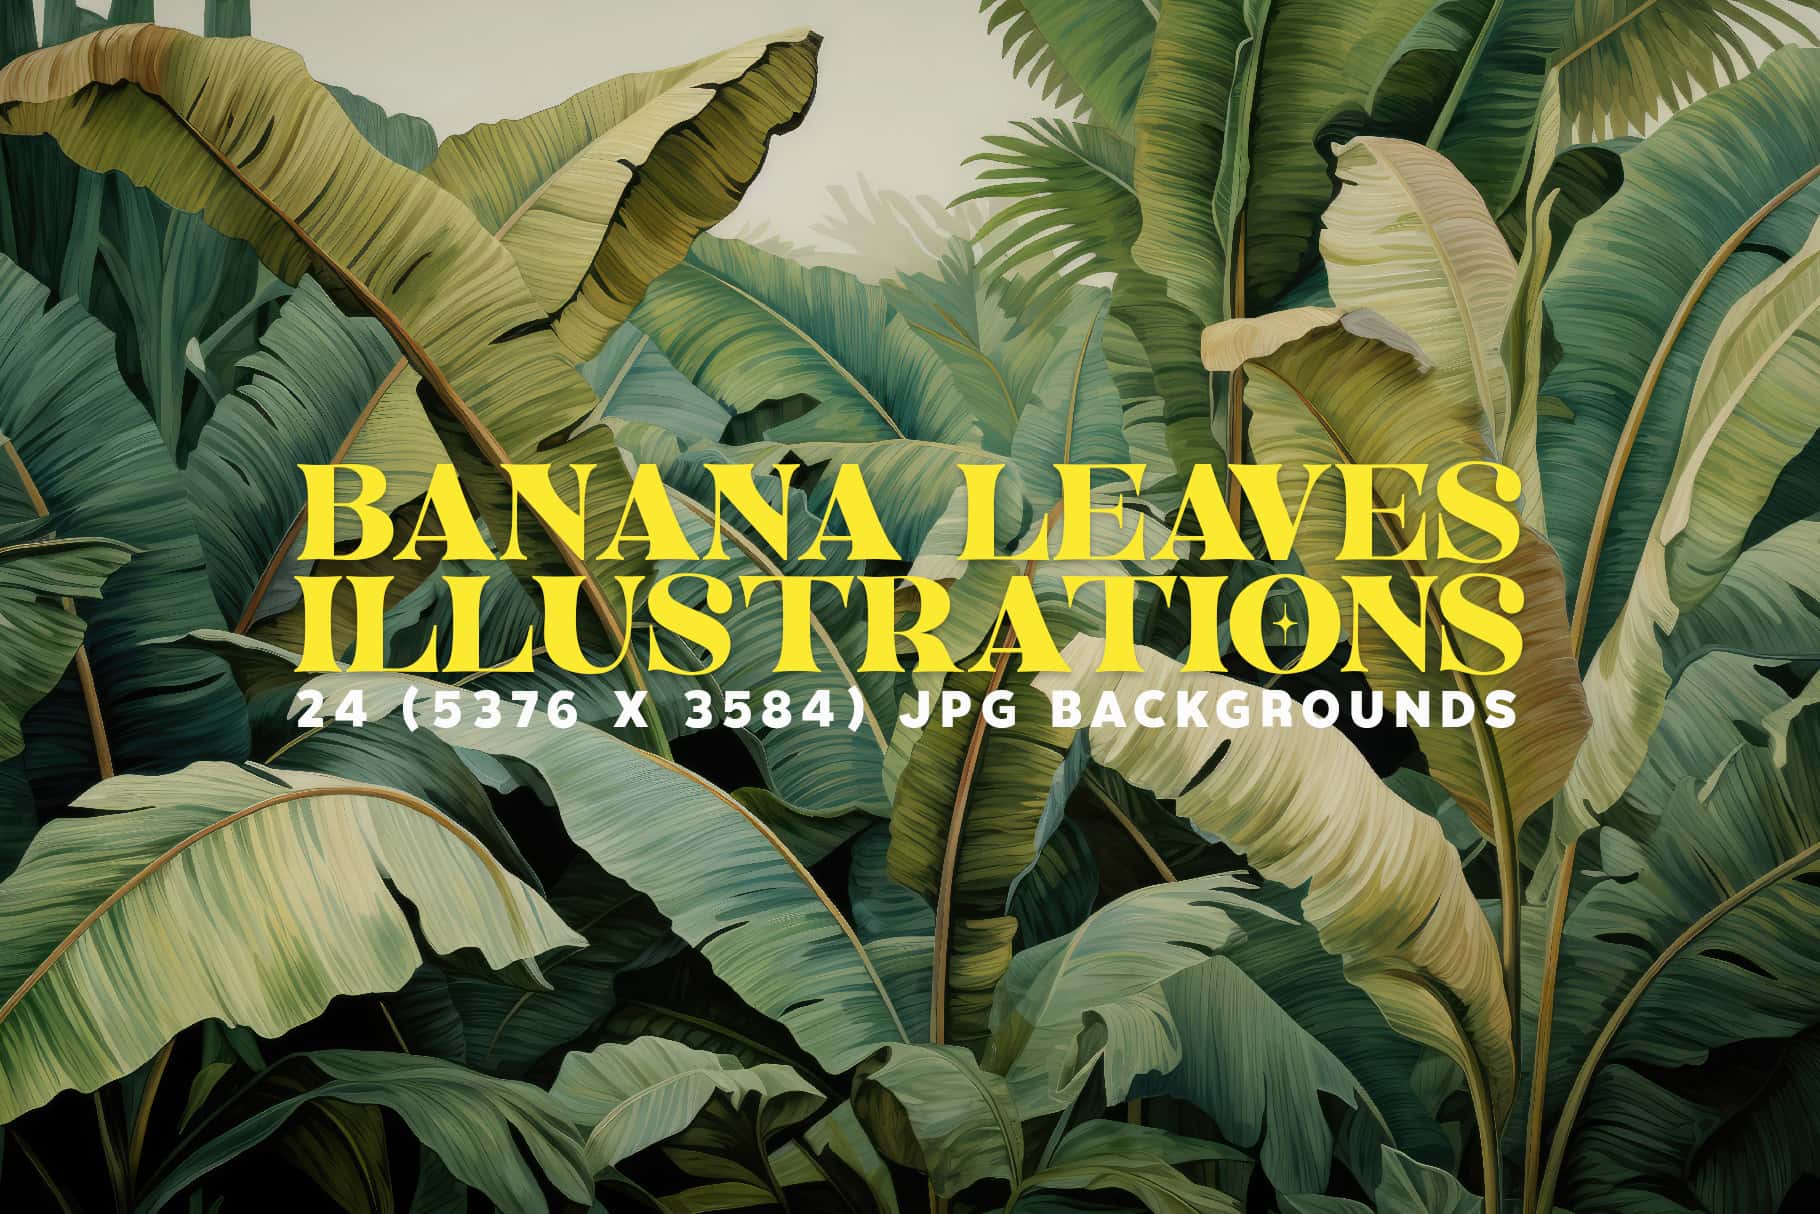 Banana leaf illustration cover